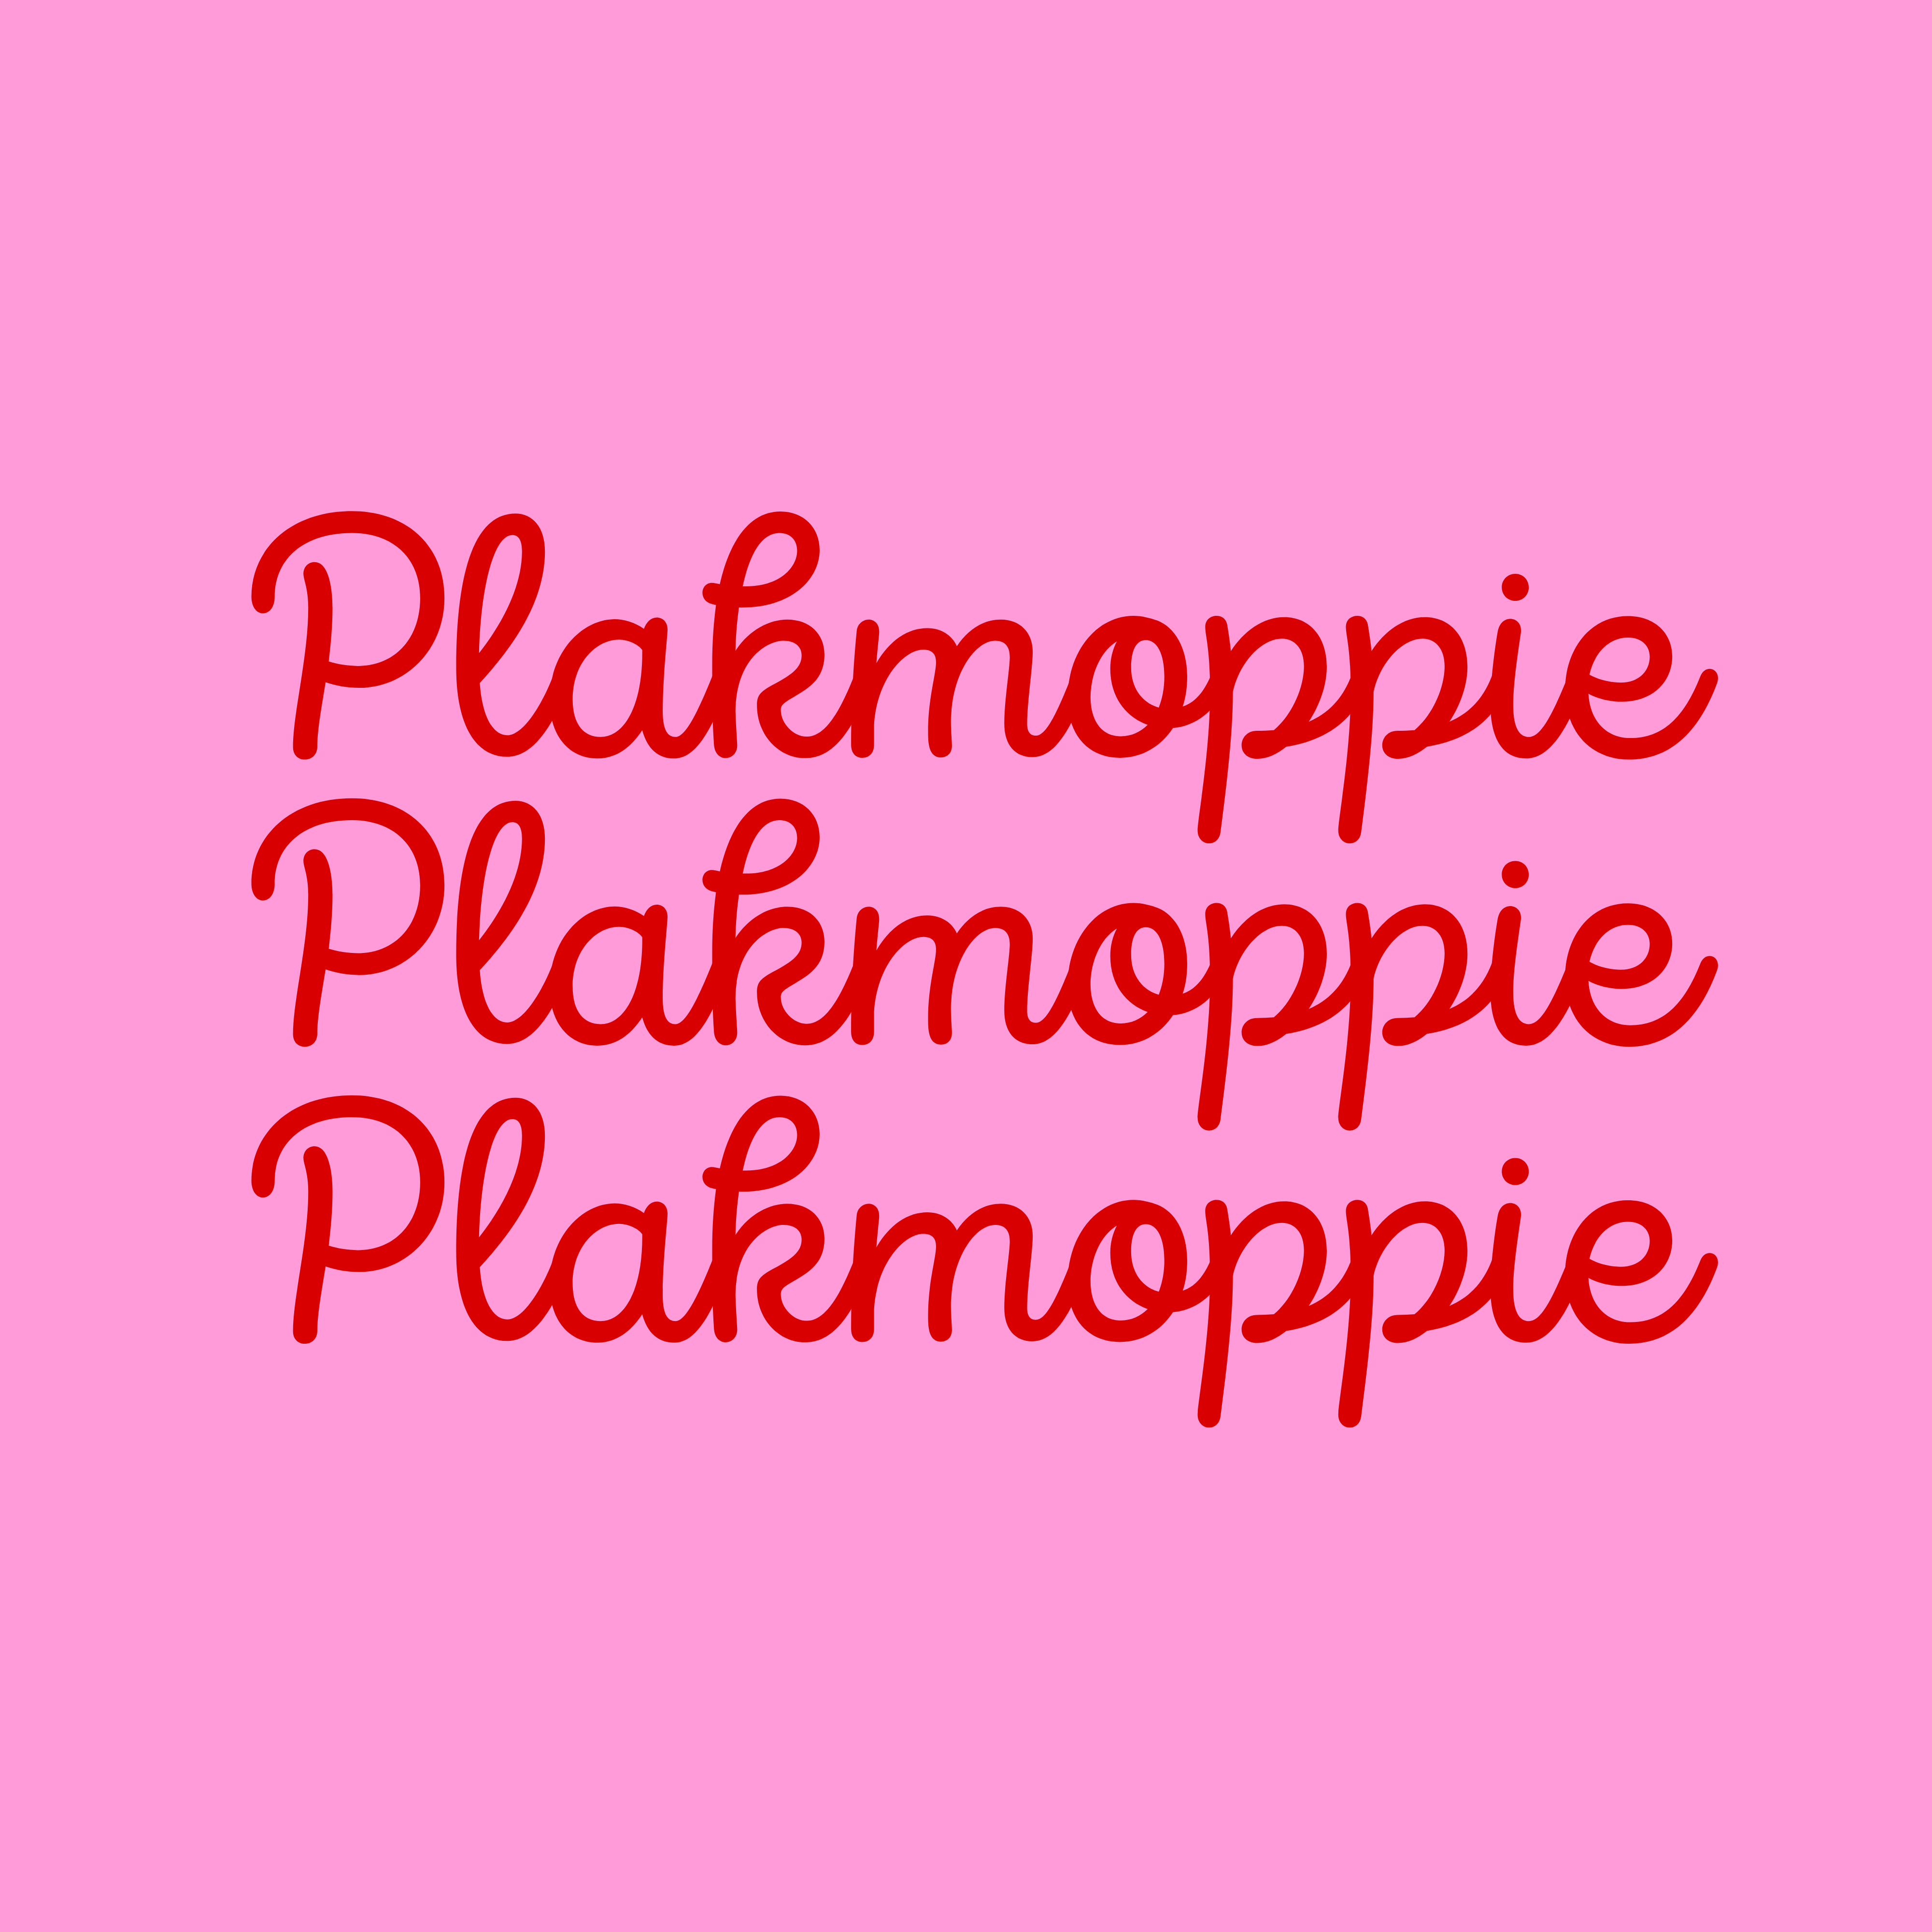 Plakmoppie